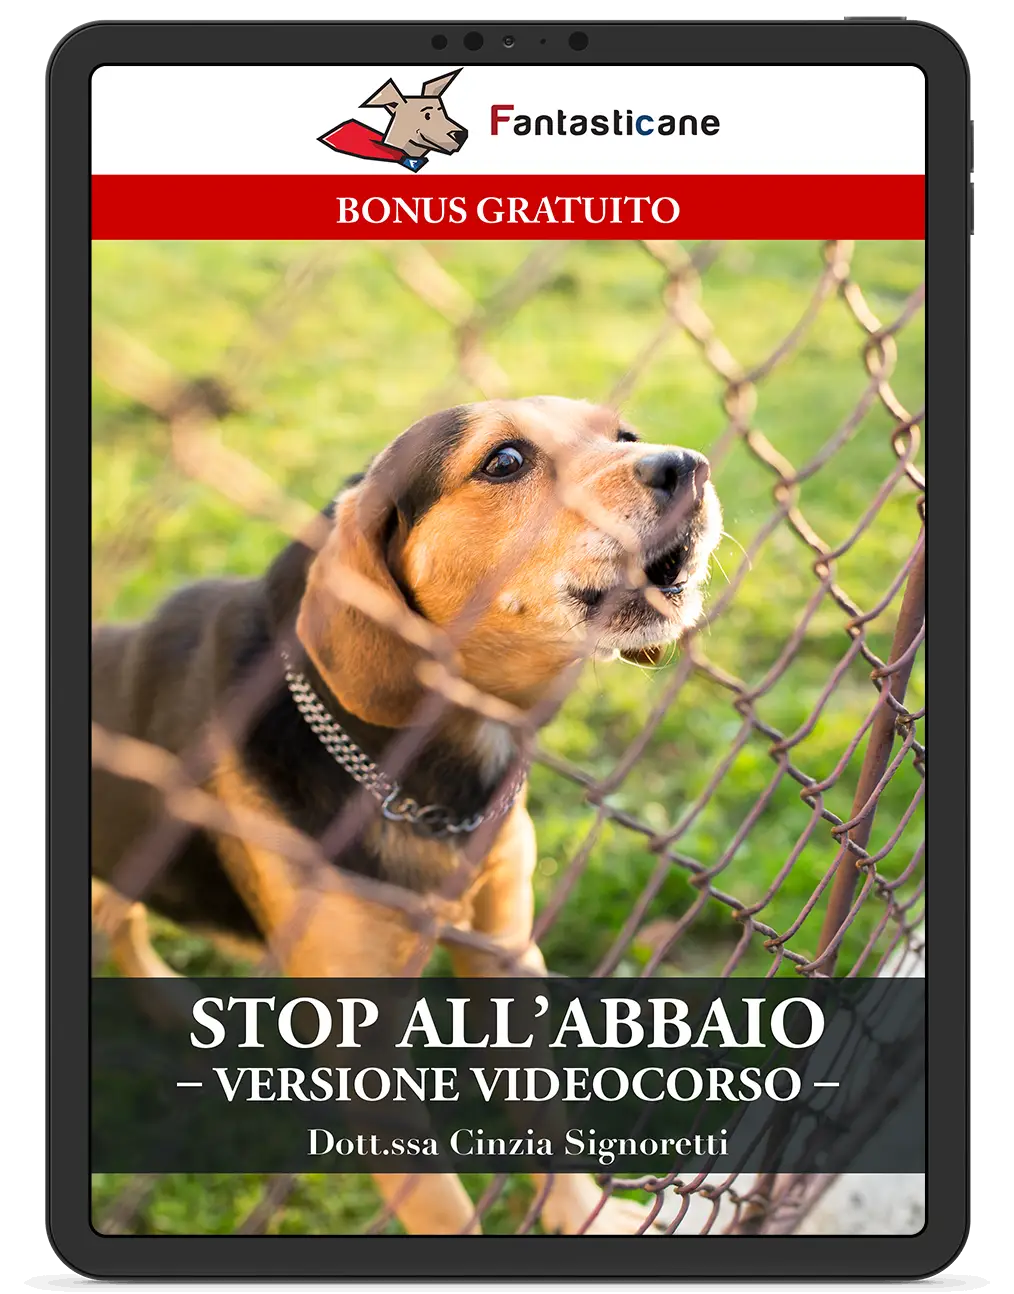 Stop Abbaio video